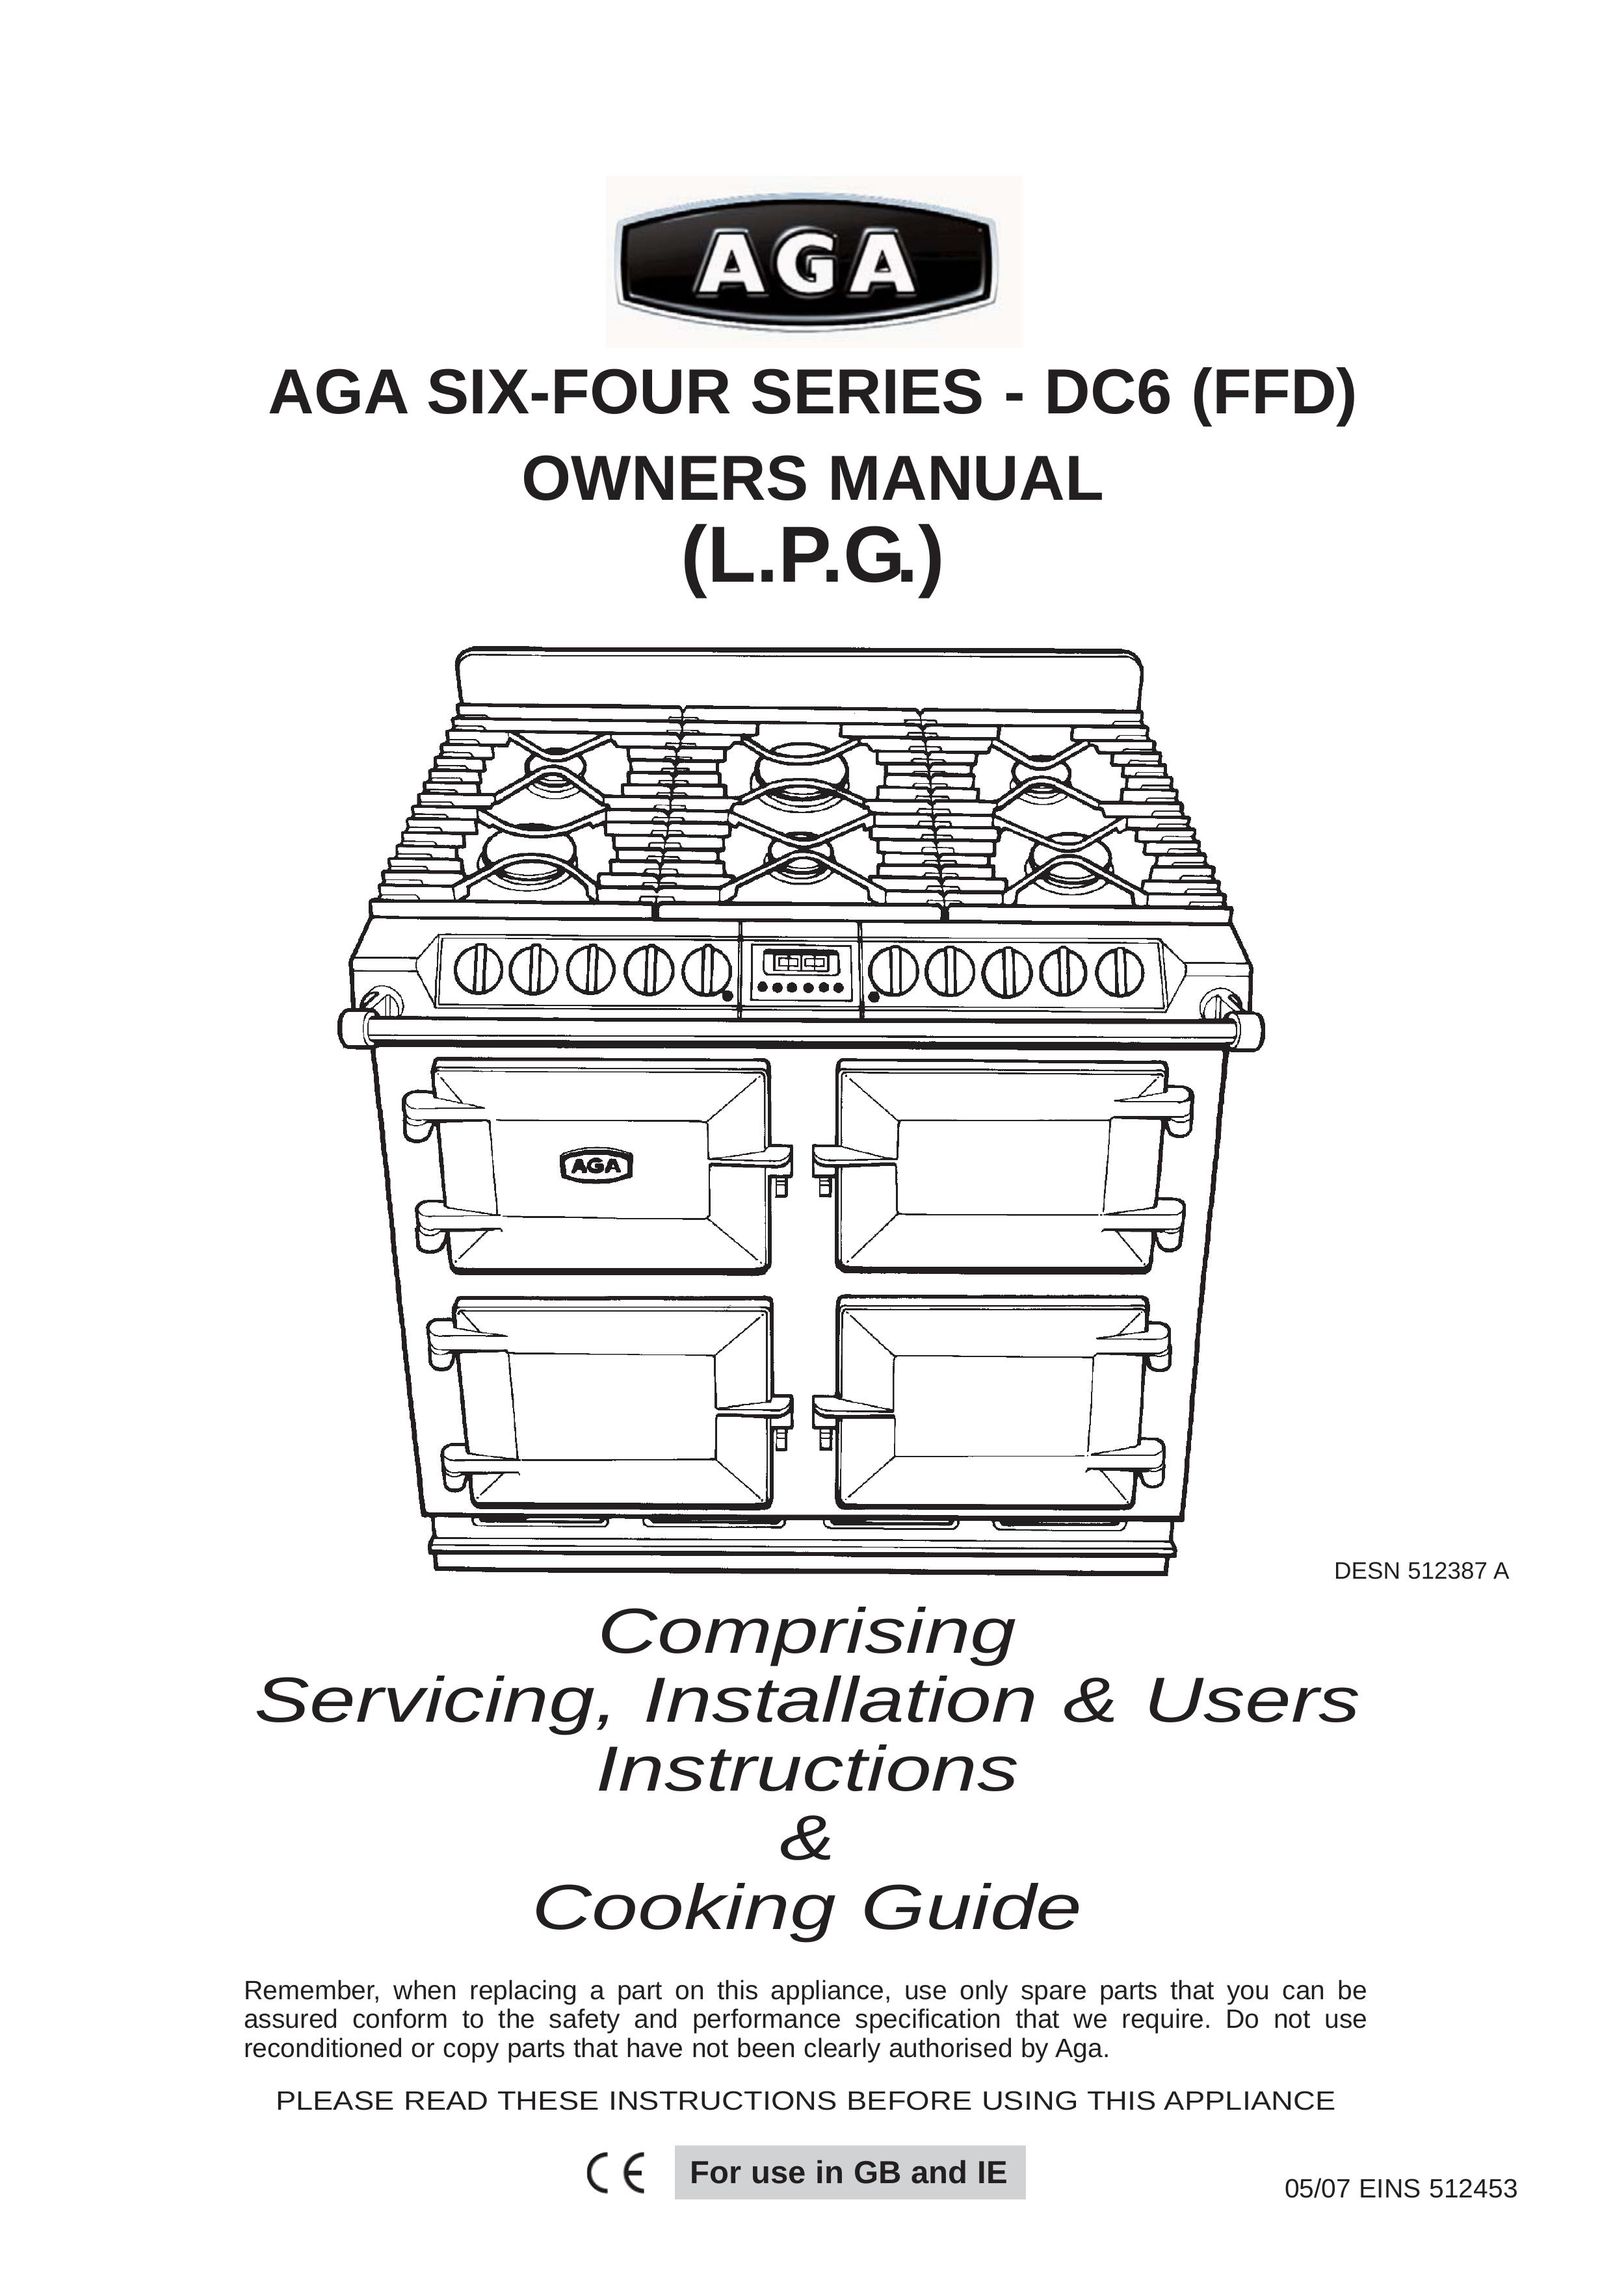 Aga Ranges DESN 512387 A Double Oven User Manual